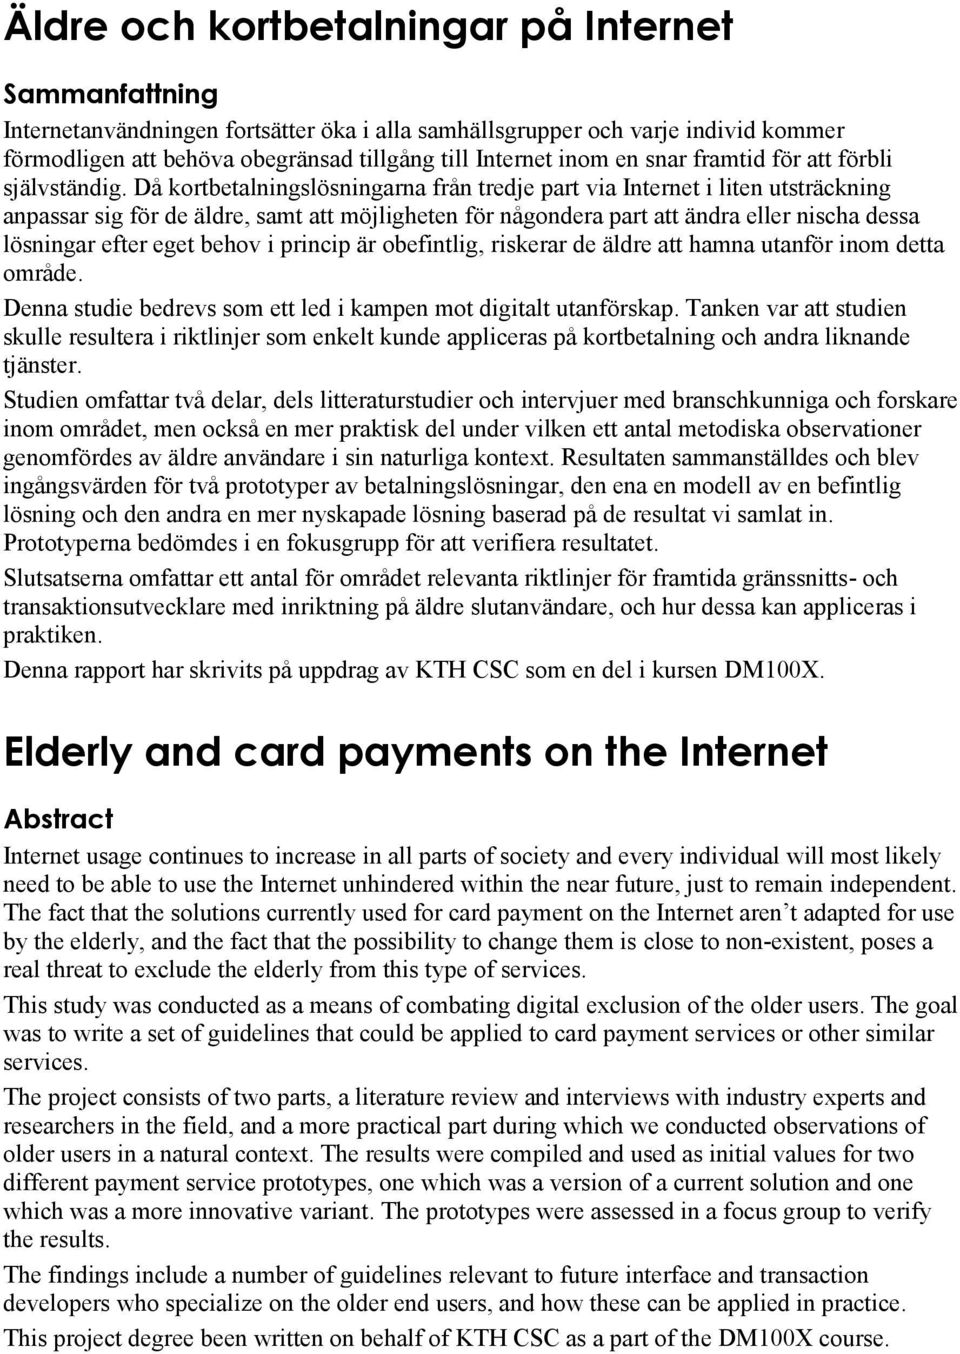 Då kortbetalningslösningarna från tredje part via Internet i liten utsträckning anpassar sig för de äldre, samt att möjligheten för någondera part att ändra eller nischa dessa lösningar efter eget